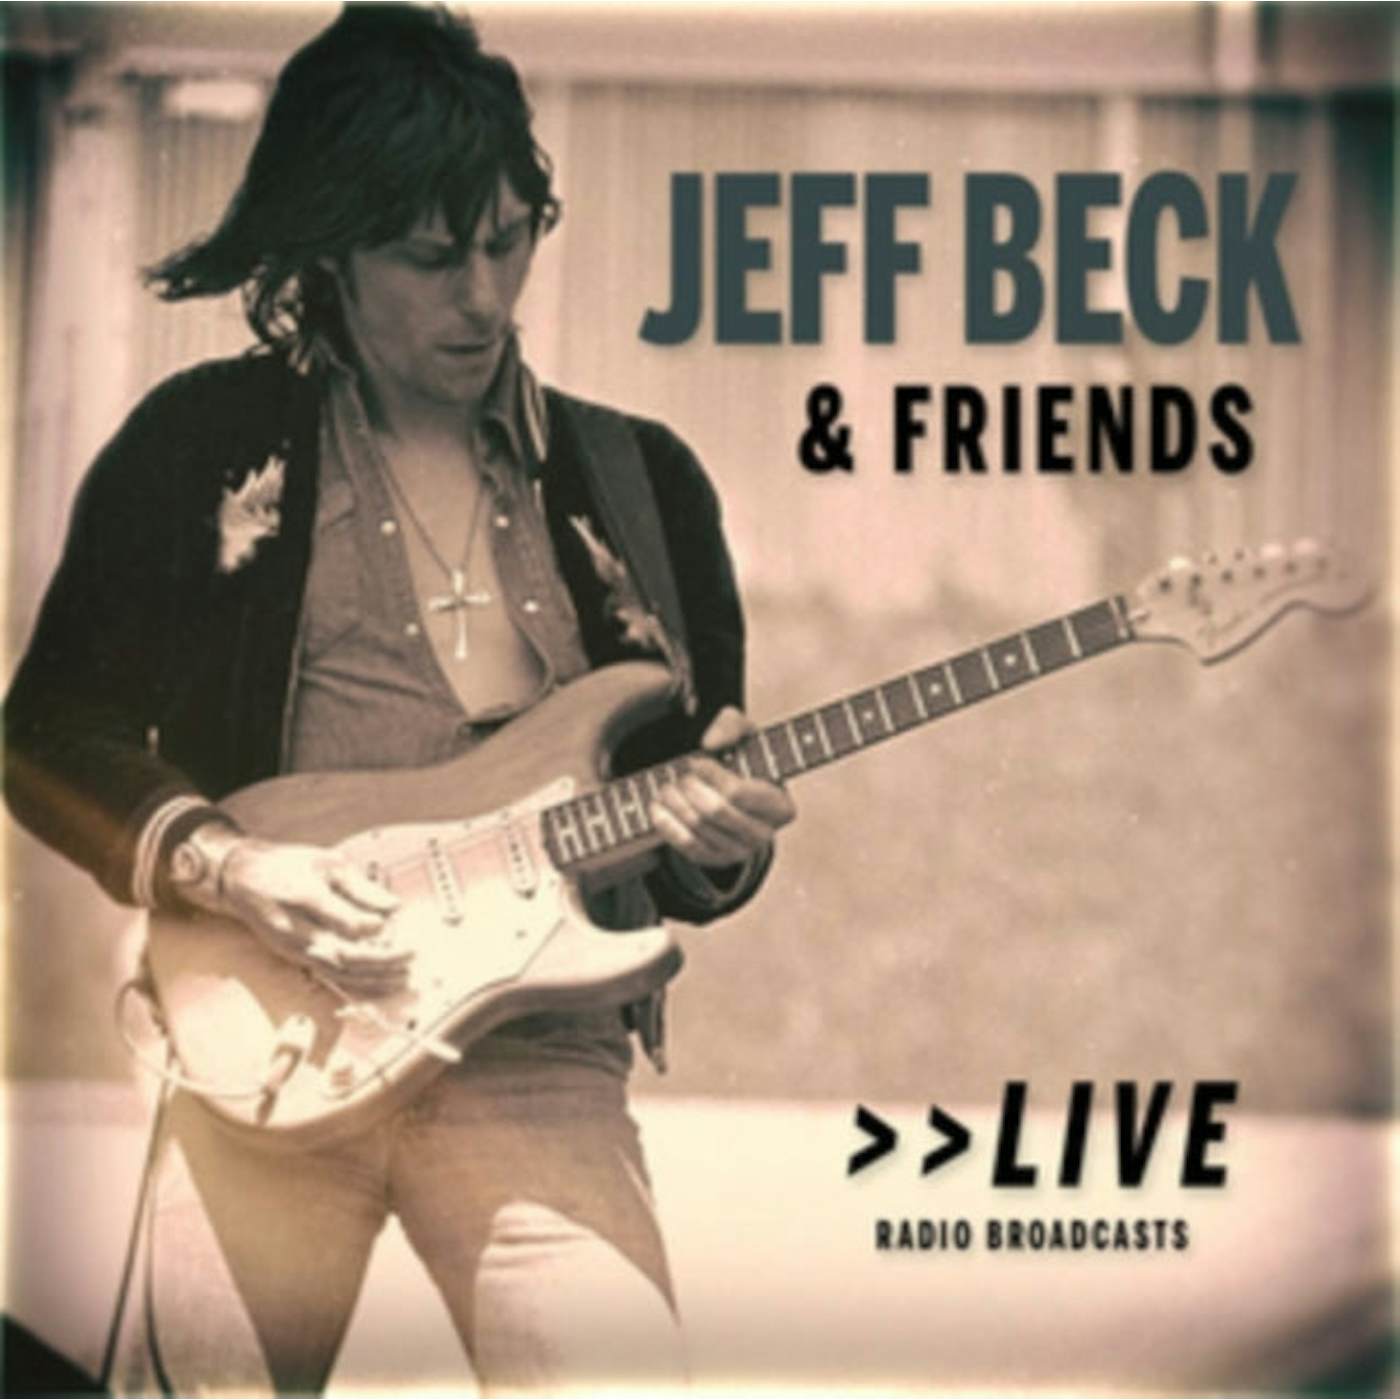 Jeff Beck CD - Jeff Beck & Friends Live